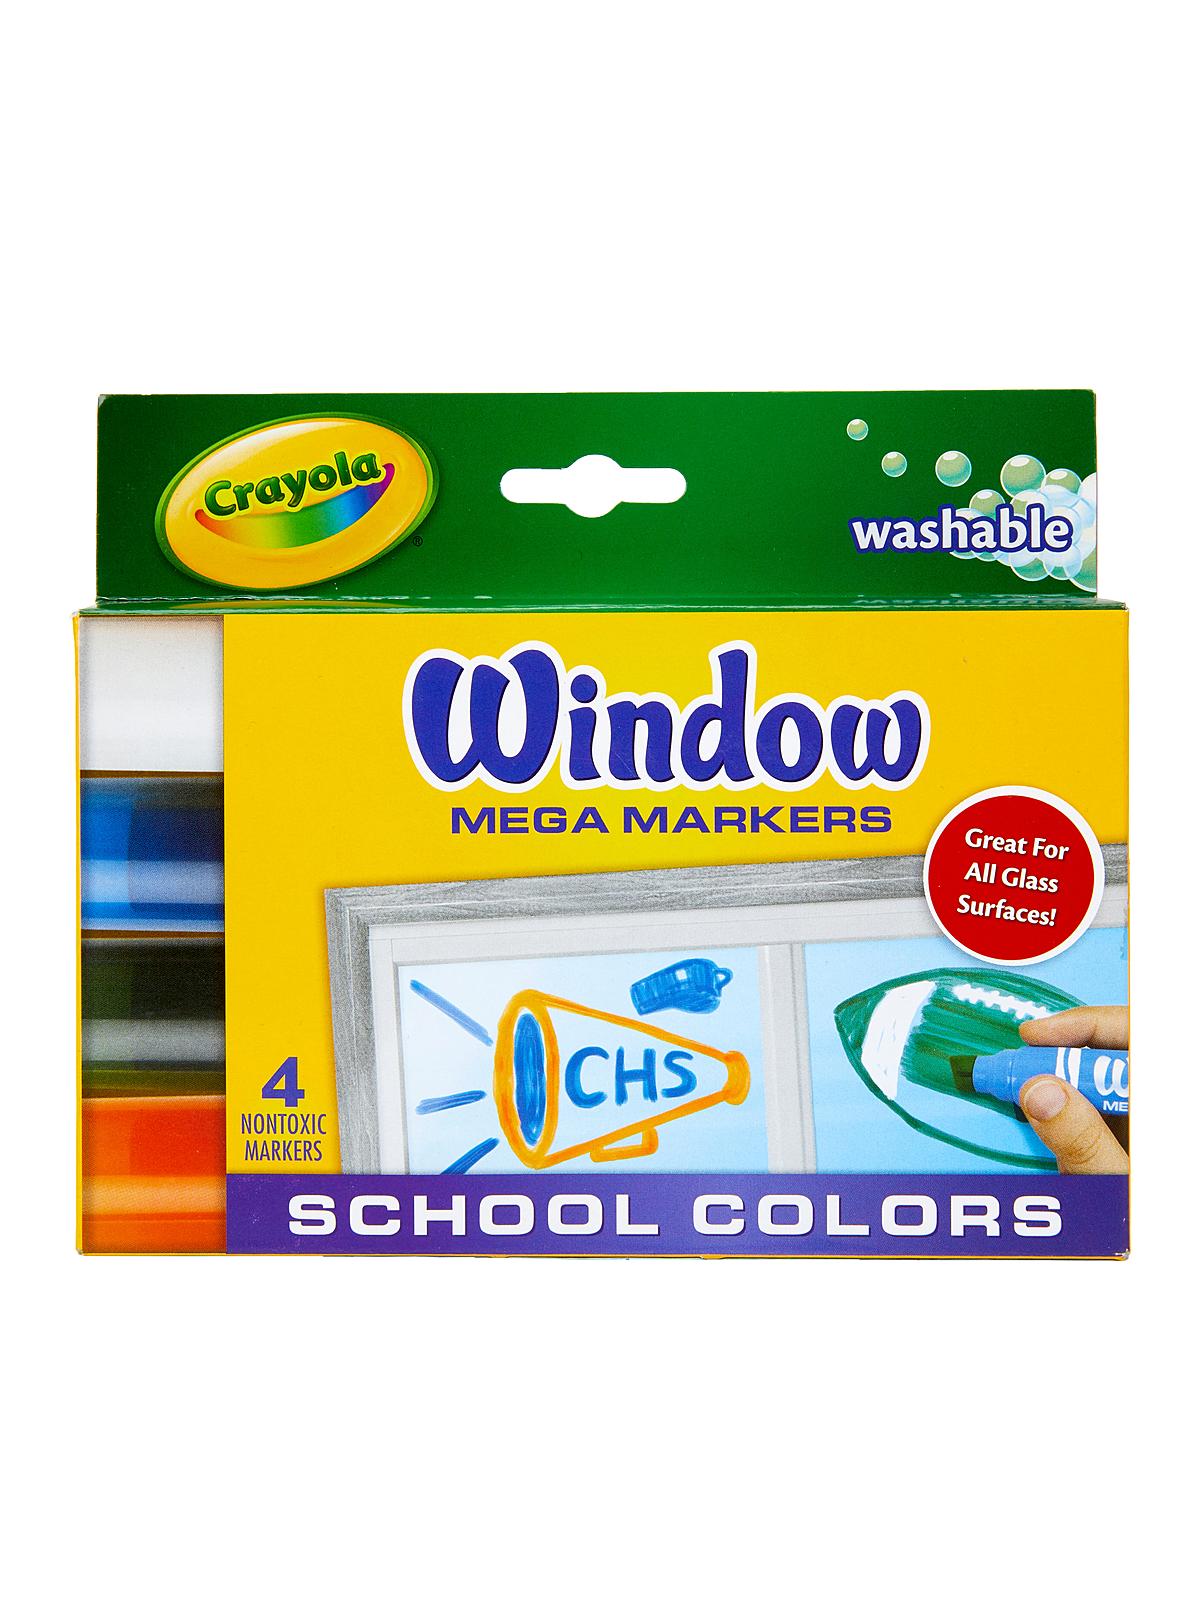 Crayola Window Mega Markers